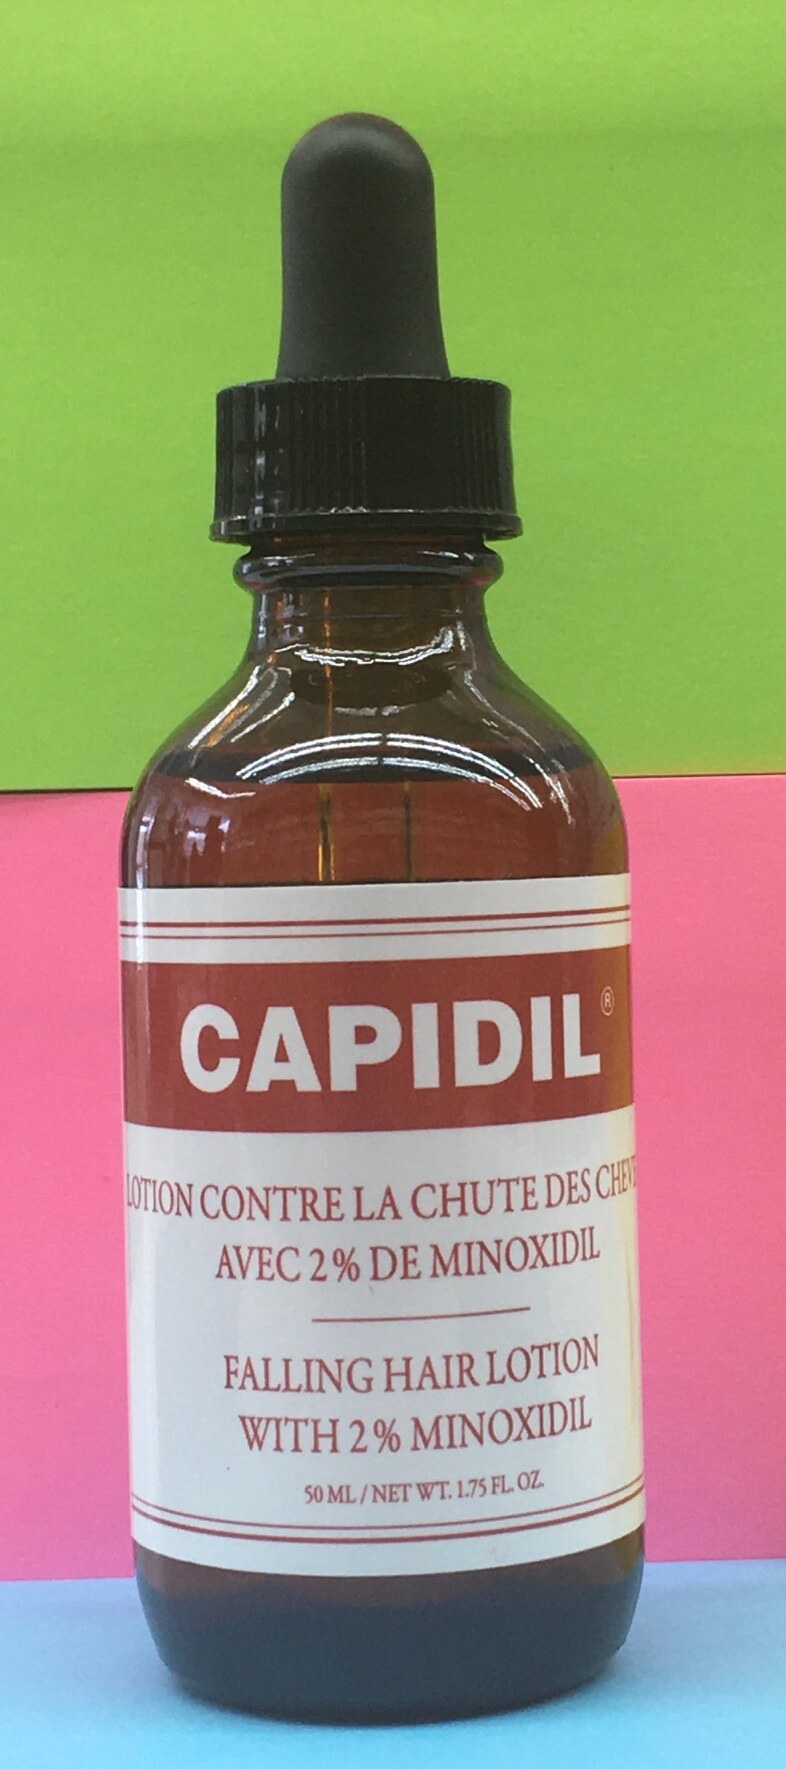 Capidil - lotion contre la chute des cheveux avec 2% de minoxidil